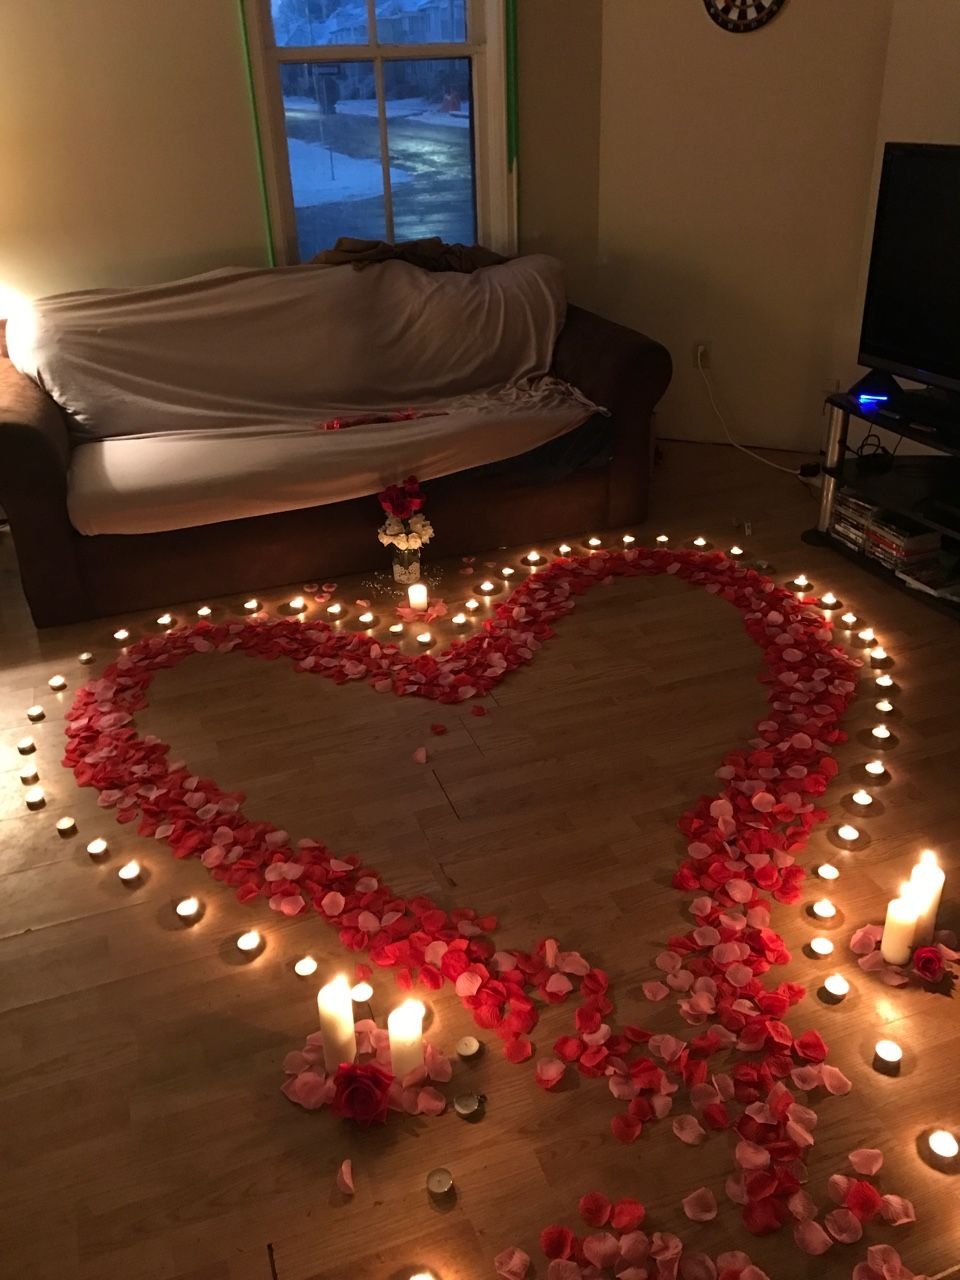 Как украсить комнату для романтического вечера - фото примеров